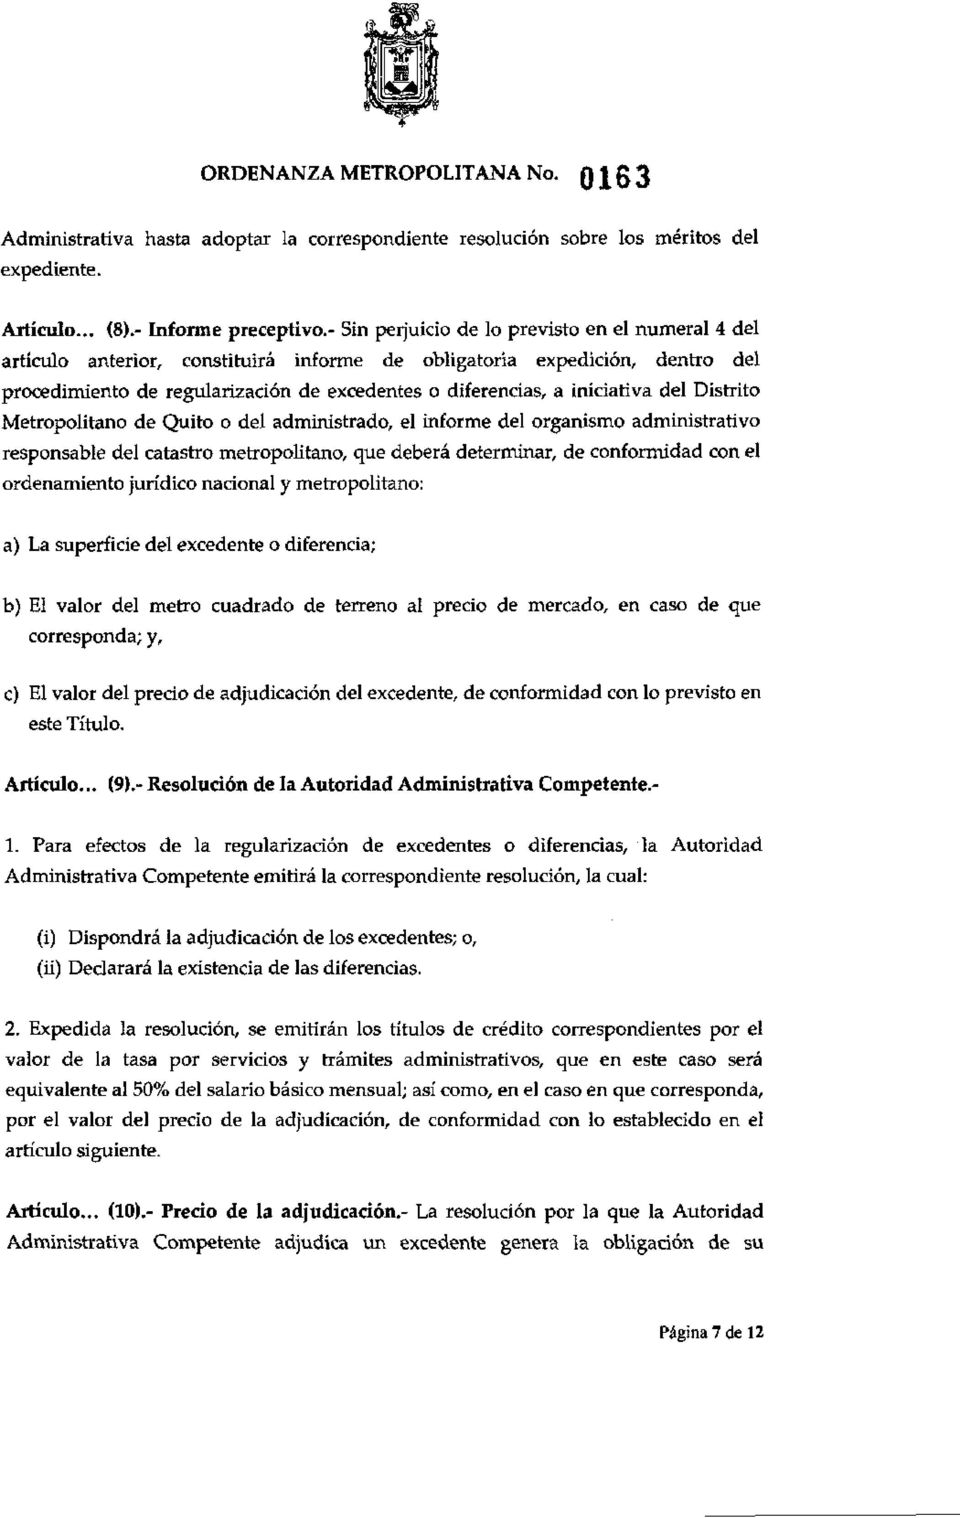 iniciativa del Distrito Metropolitano de Quito o del administrado, el informe del organismo administrativo responsable del catastro metropolitano, que deberá determinar, de conformidad con el